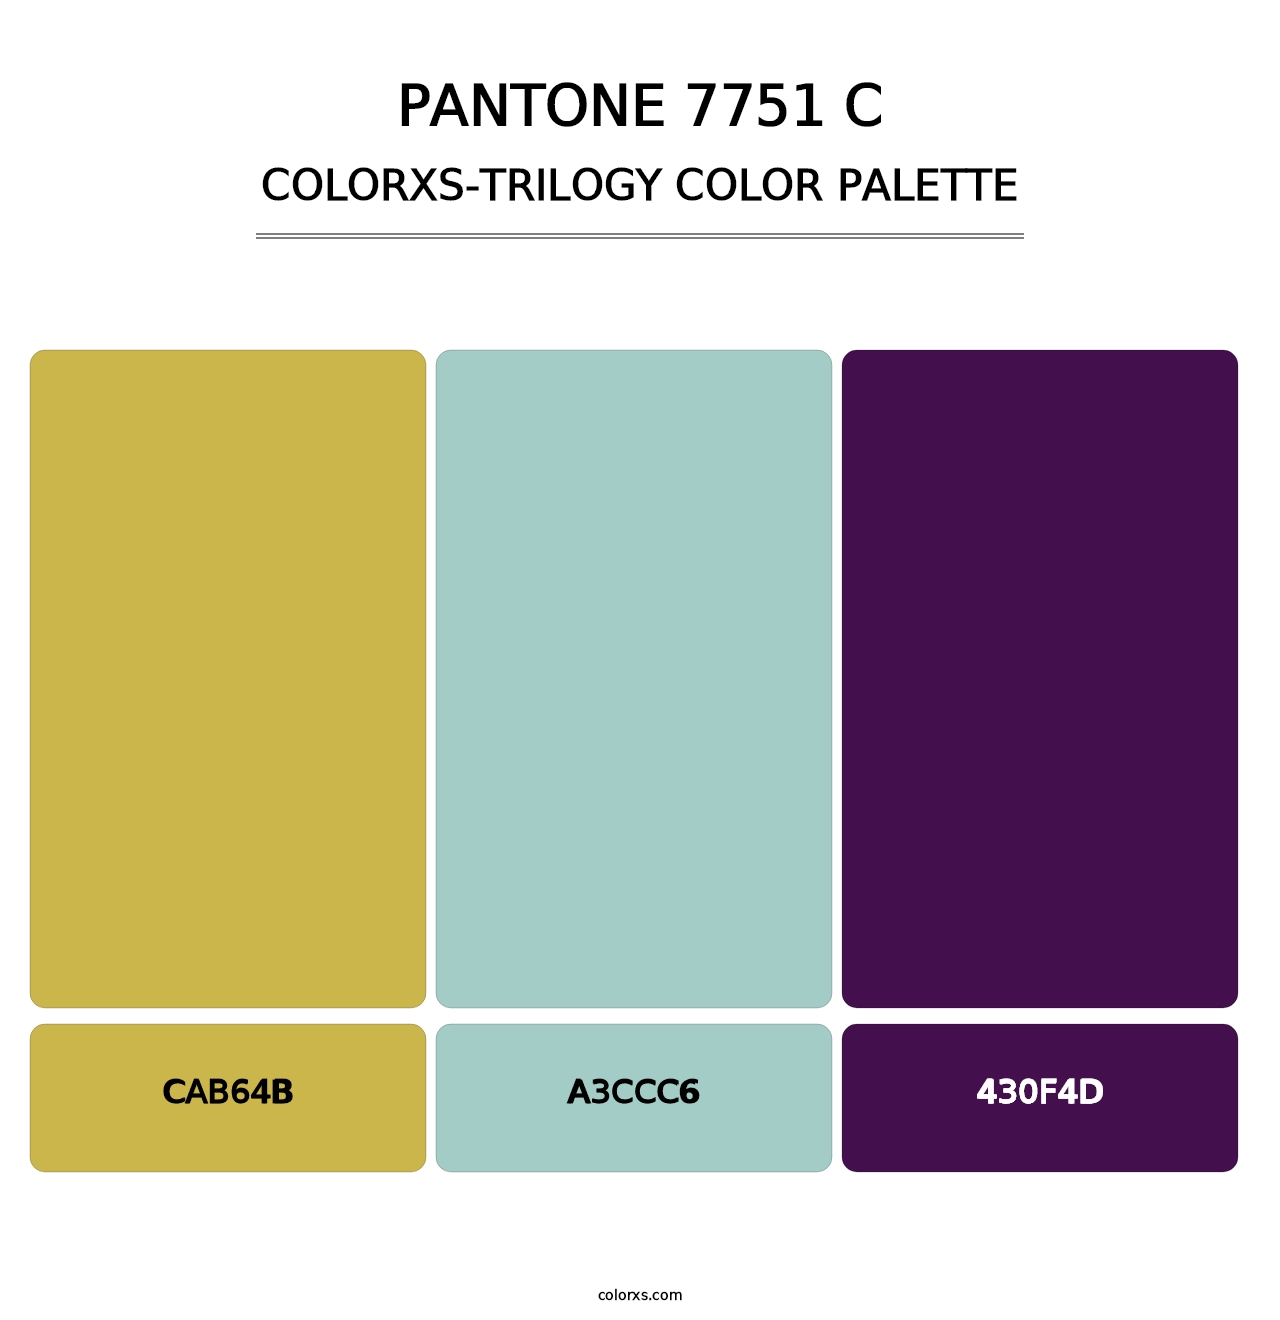 PANTONE 7751 C - Colorxs Trilogy Palette